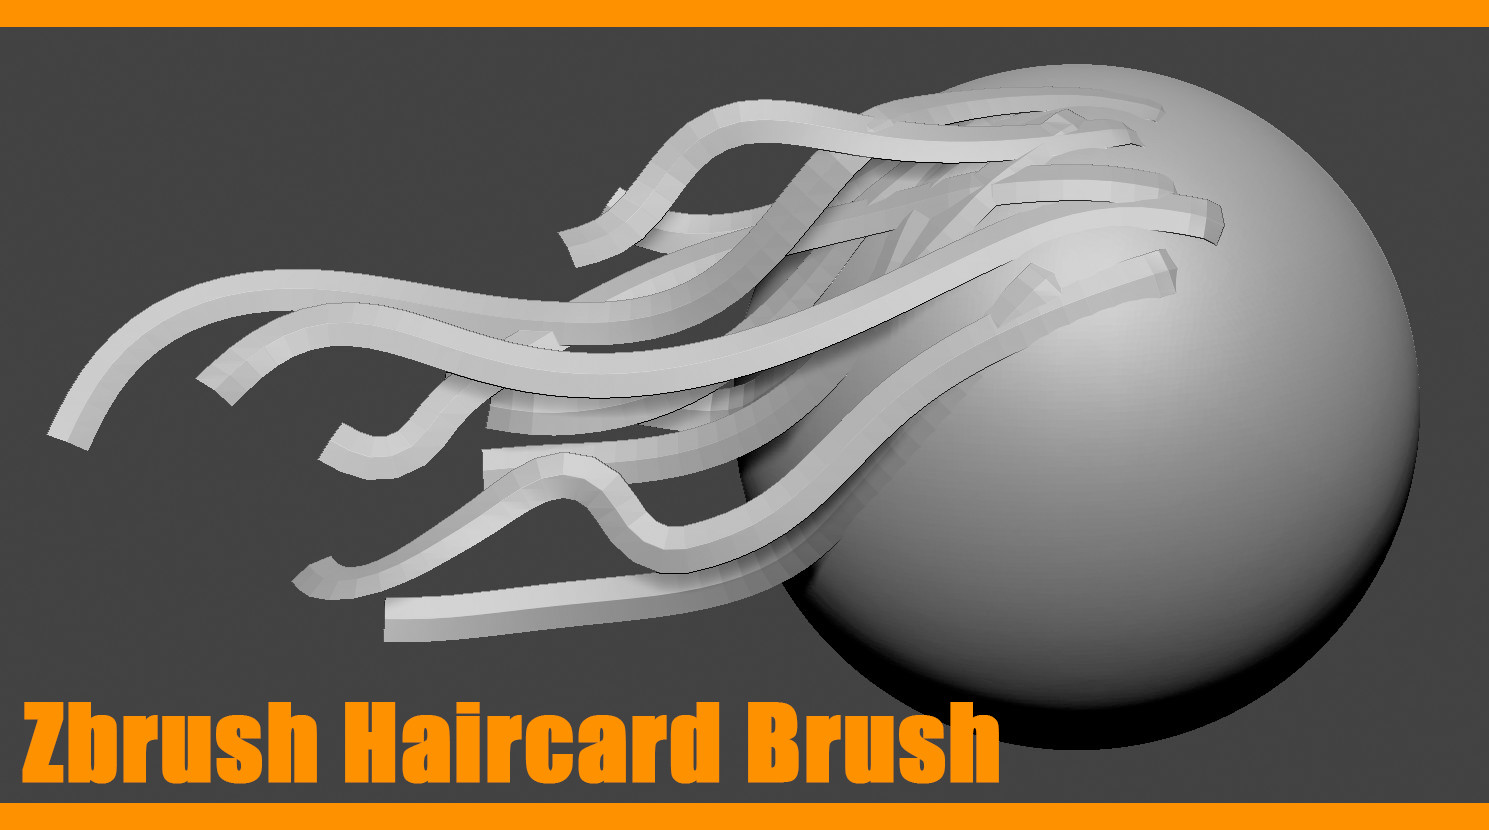 zbrush hair card brush